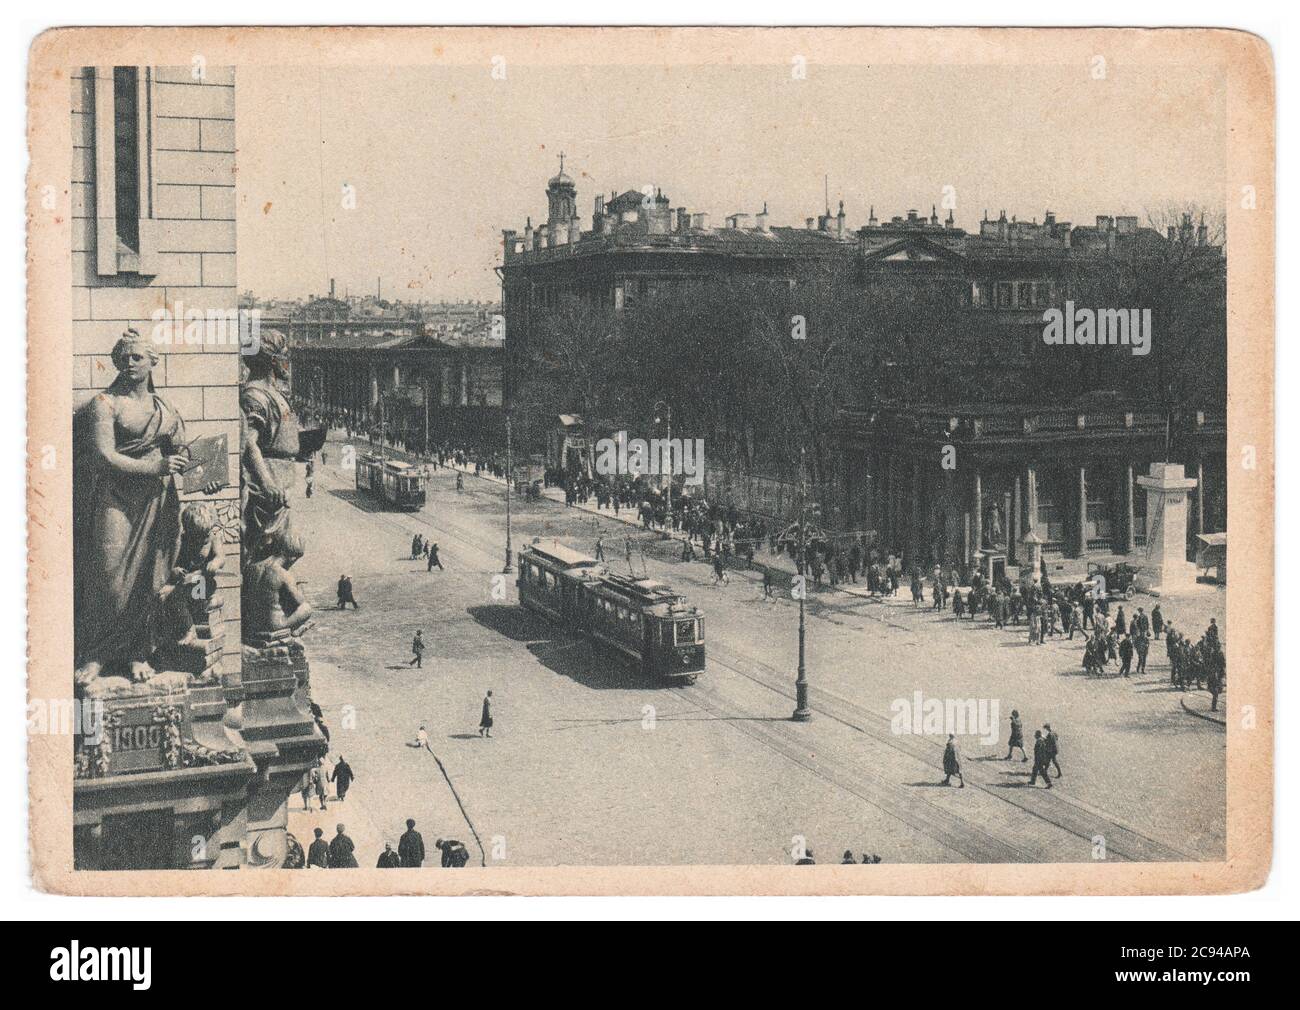 RUSSLAND, UdSSR - UM 1929: Eine monochrome Postkarte zeigt die Avenue des 25. Oktober in Leningrad Stockfoto